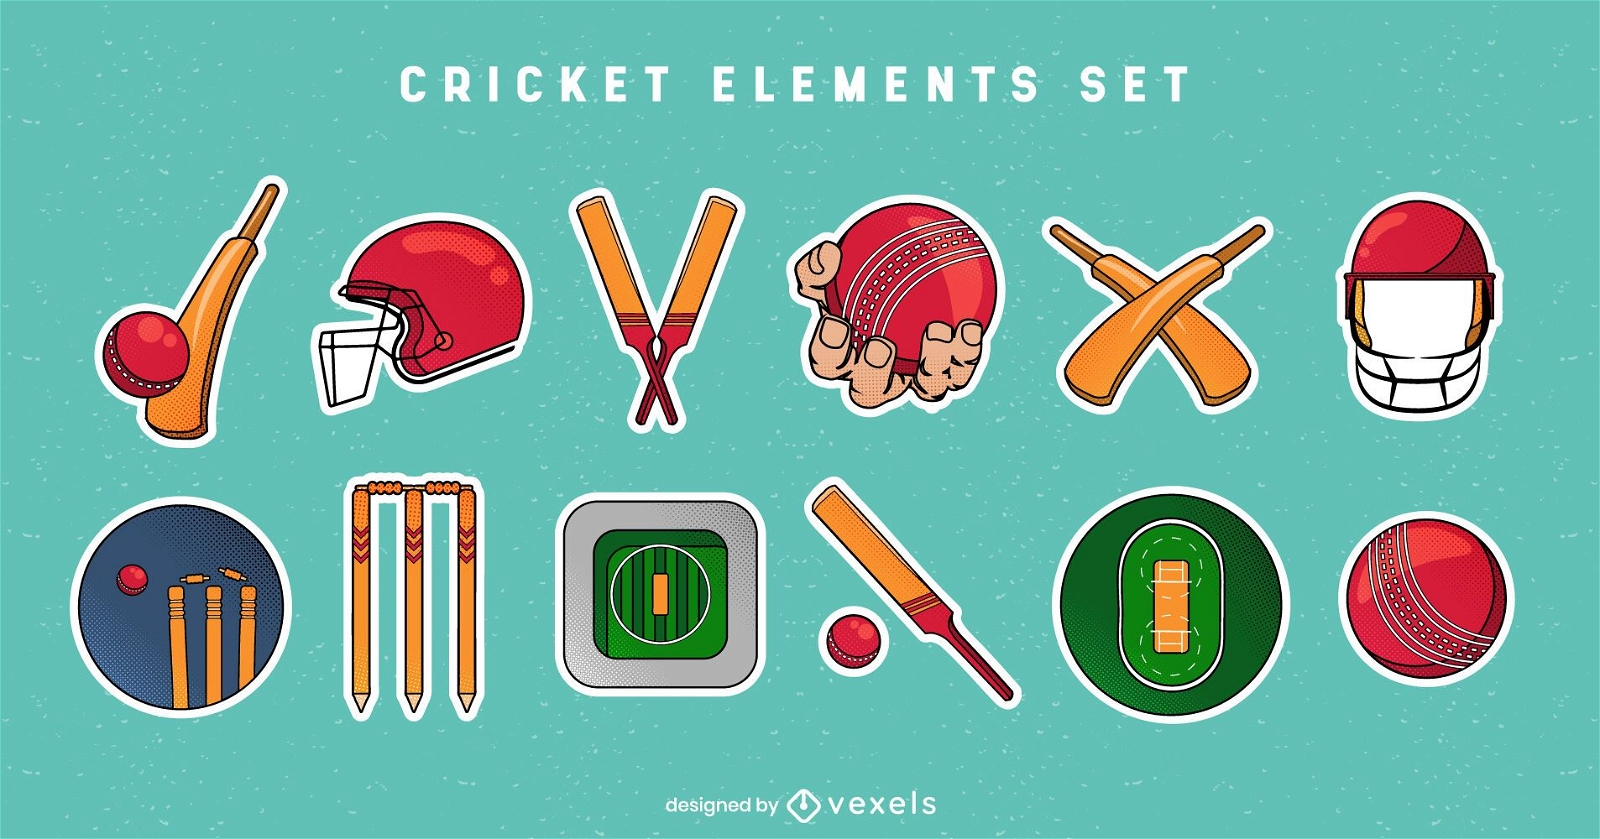 Cricket-Element-Set